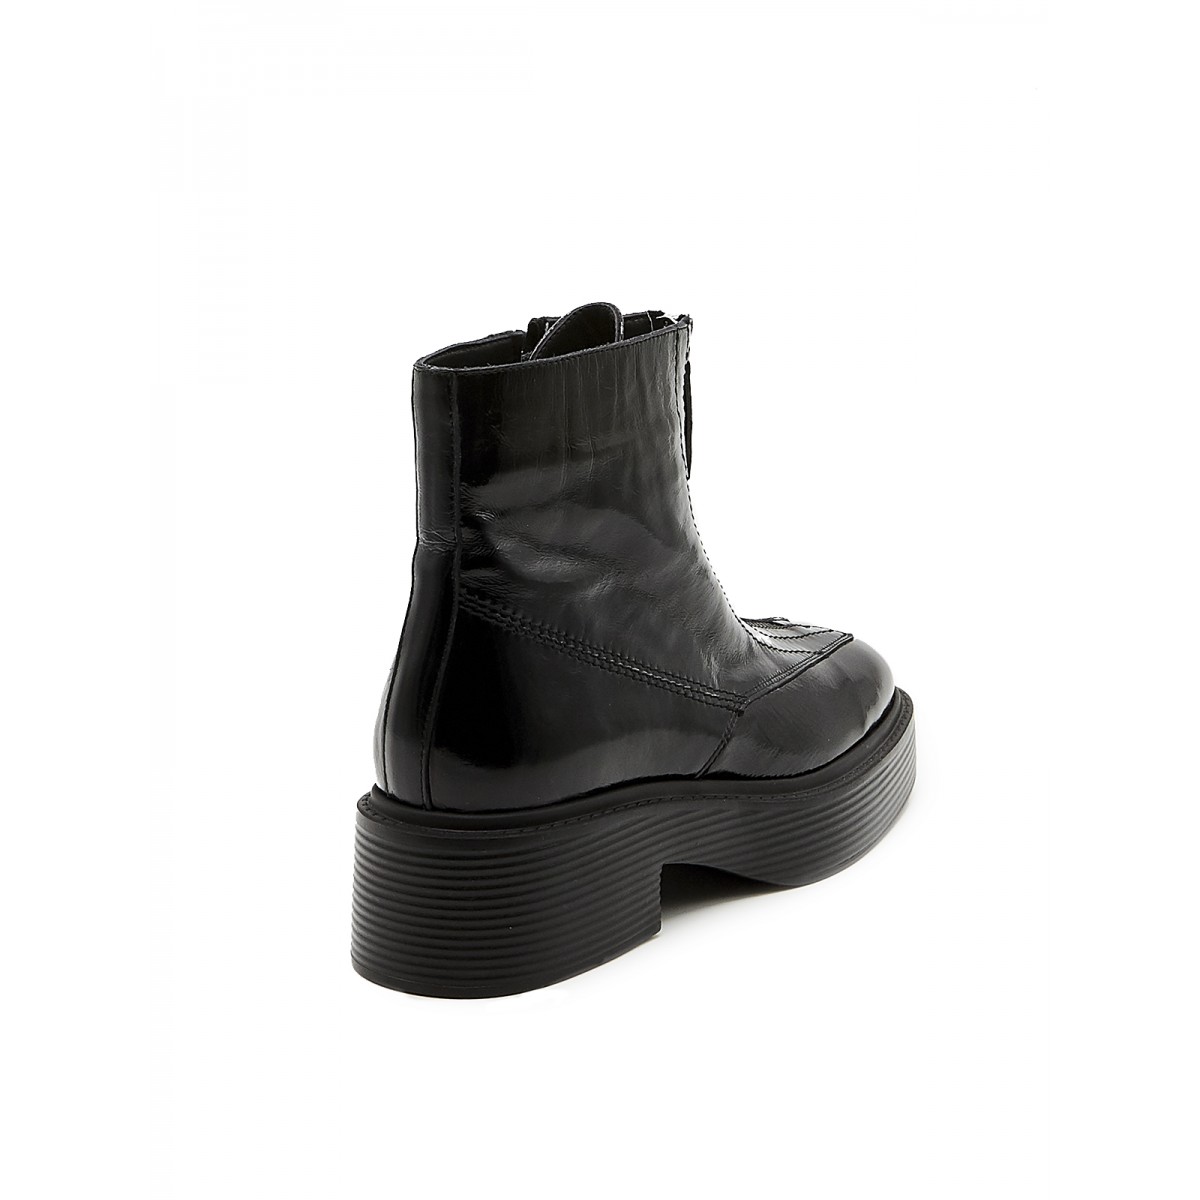 106530, ботинки Dario Bruni, женские зимние, черный